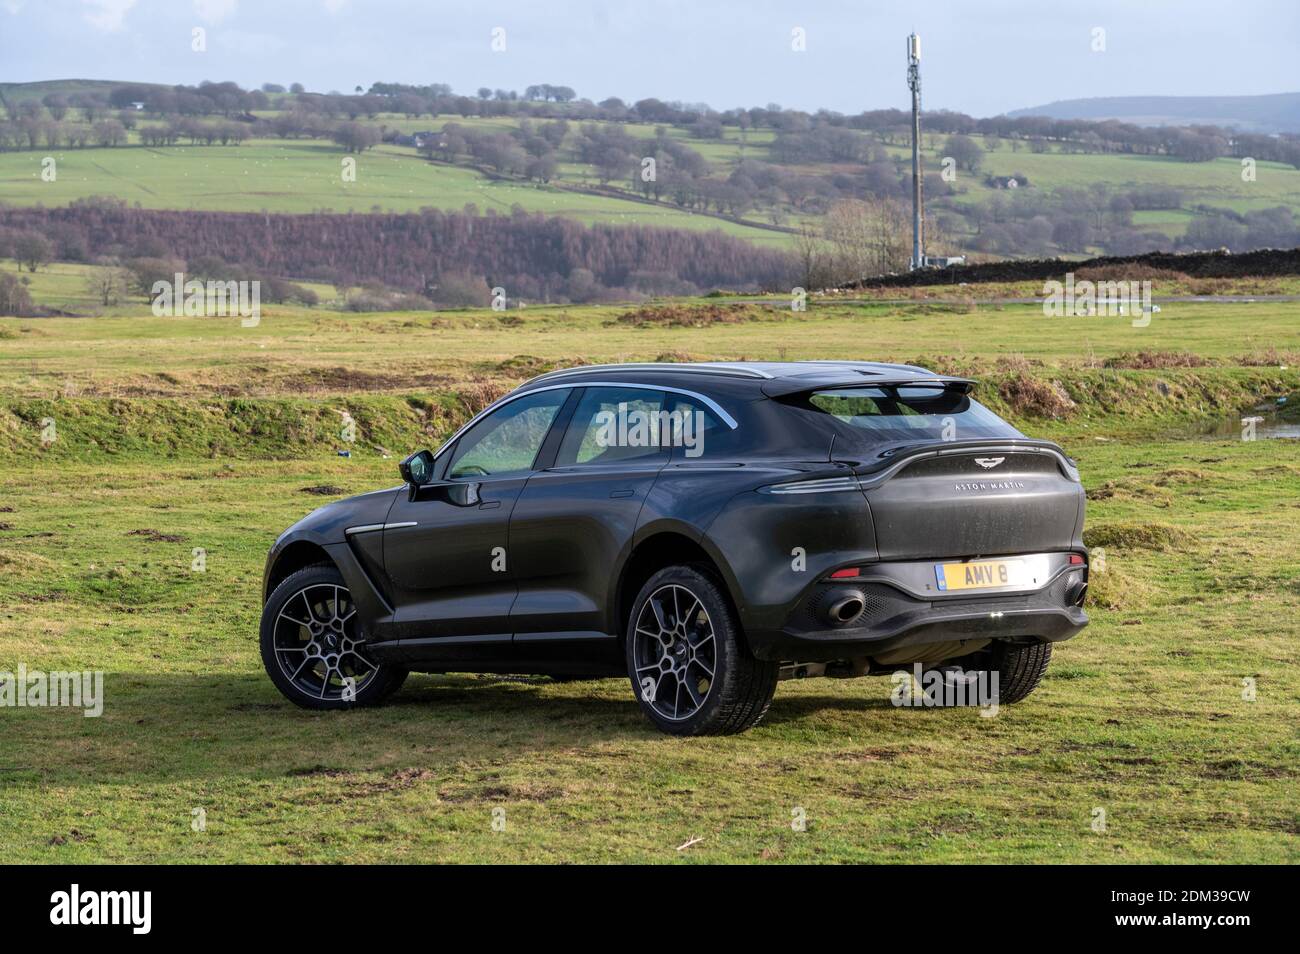 Un vus V8 Aston Martin DBX de 4 litres avec une vitesse maximale de 180 km/h et un prix à partir de 158,000 £ sur les sommets montagneux du sud du pays de Galles. Banque D'Images